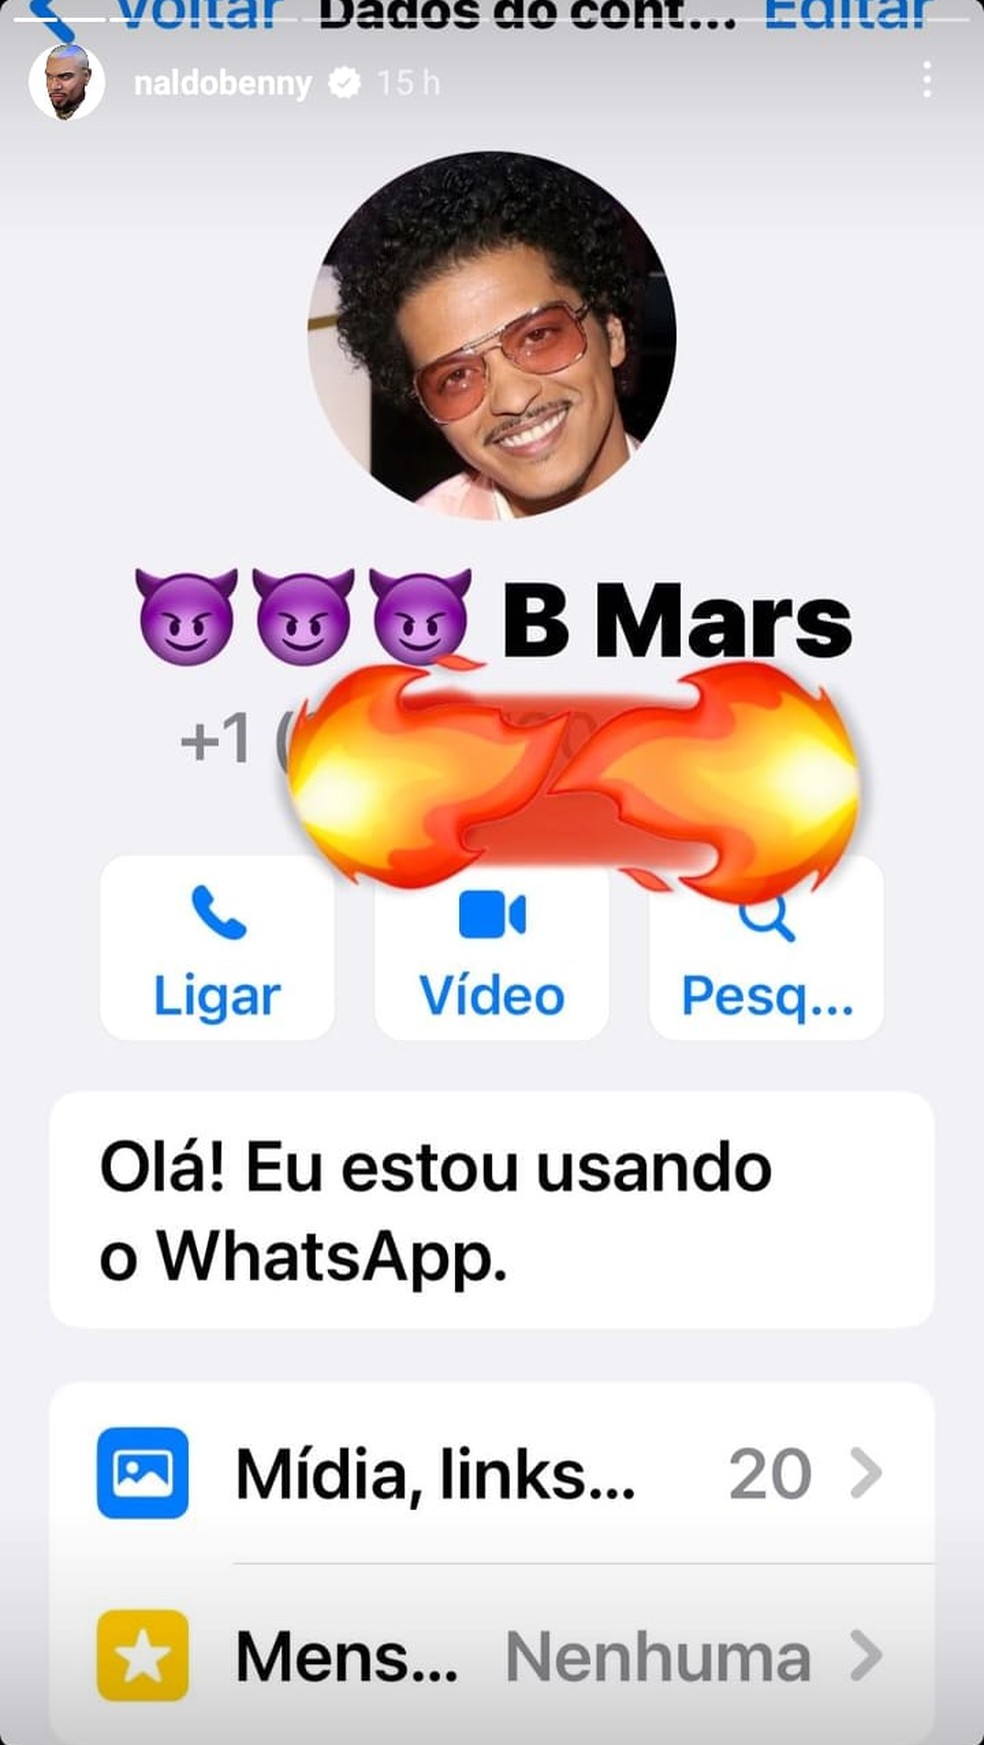 Naldo Benny usa redes sociais para mostrar que tem suposto contato telefônico de Bruno Mars — Foto: Reprodução/Instagram